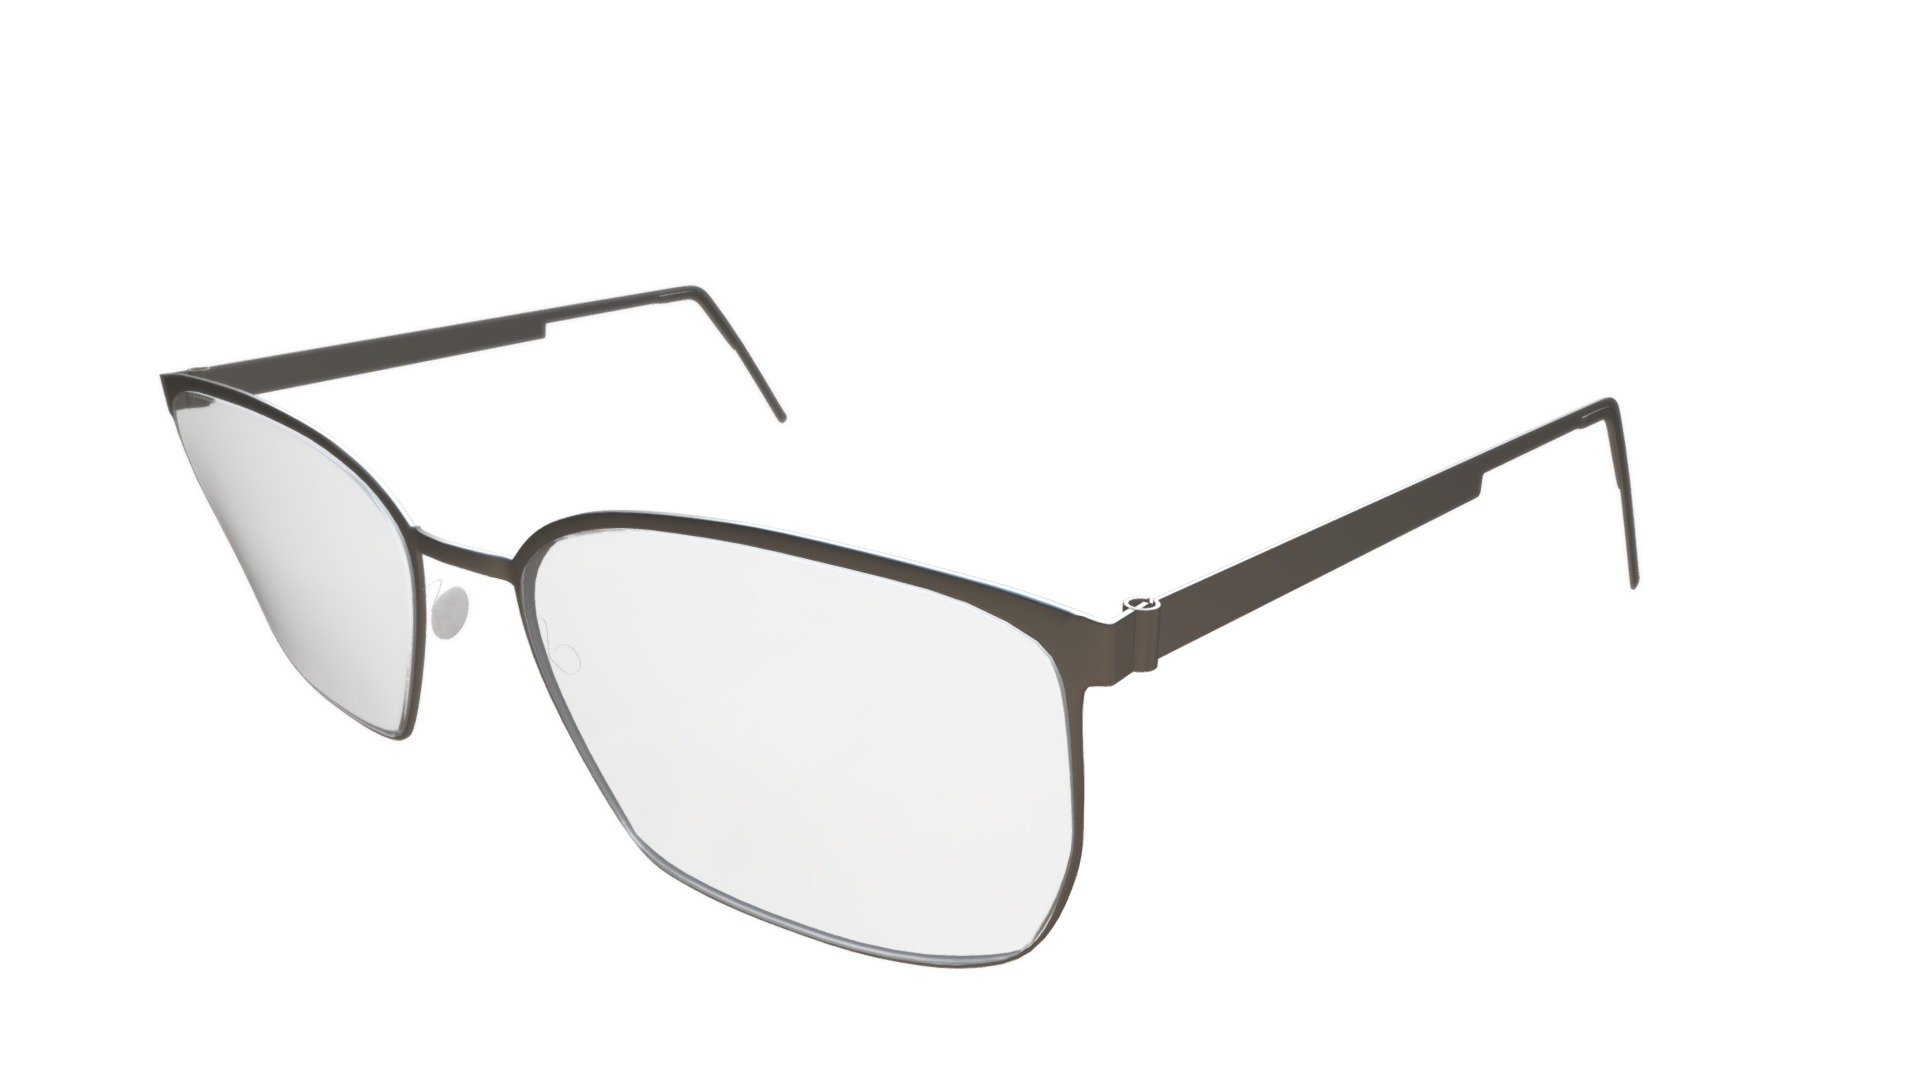 Glasses based of the design of Lindberg - Glasses - Buy Royalty Free 3D model by sorenfroststaal 3d model